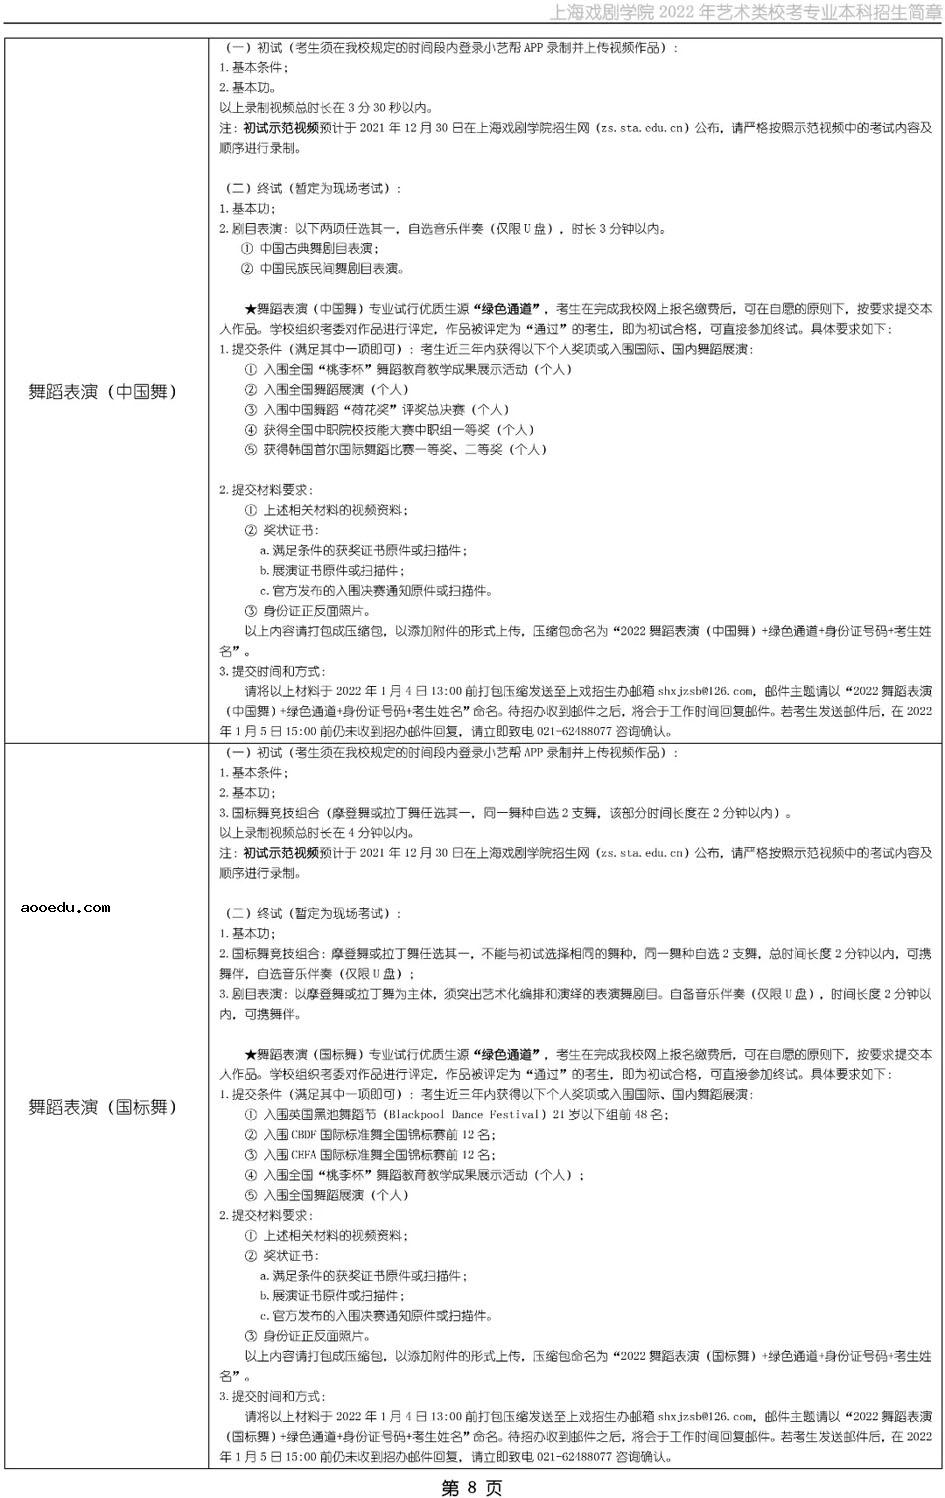 上海戏剧学院2022年艺术类校考招生简章 考试时间及内容